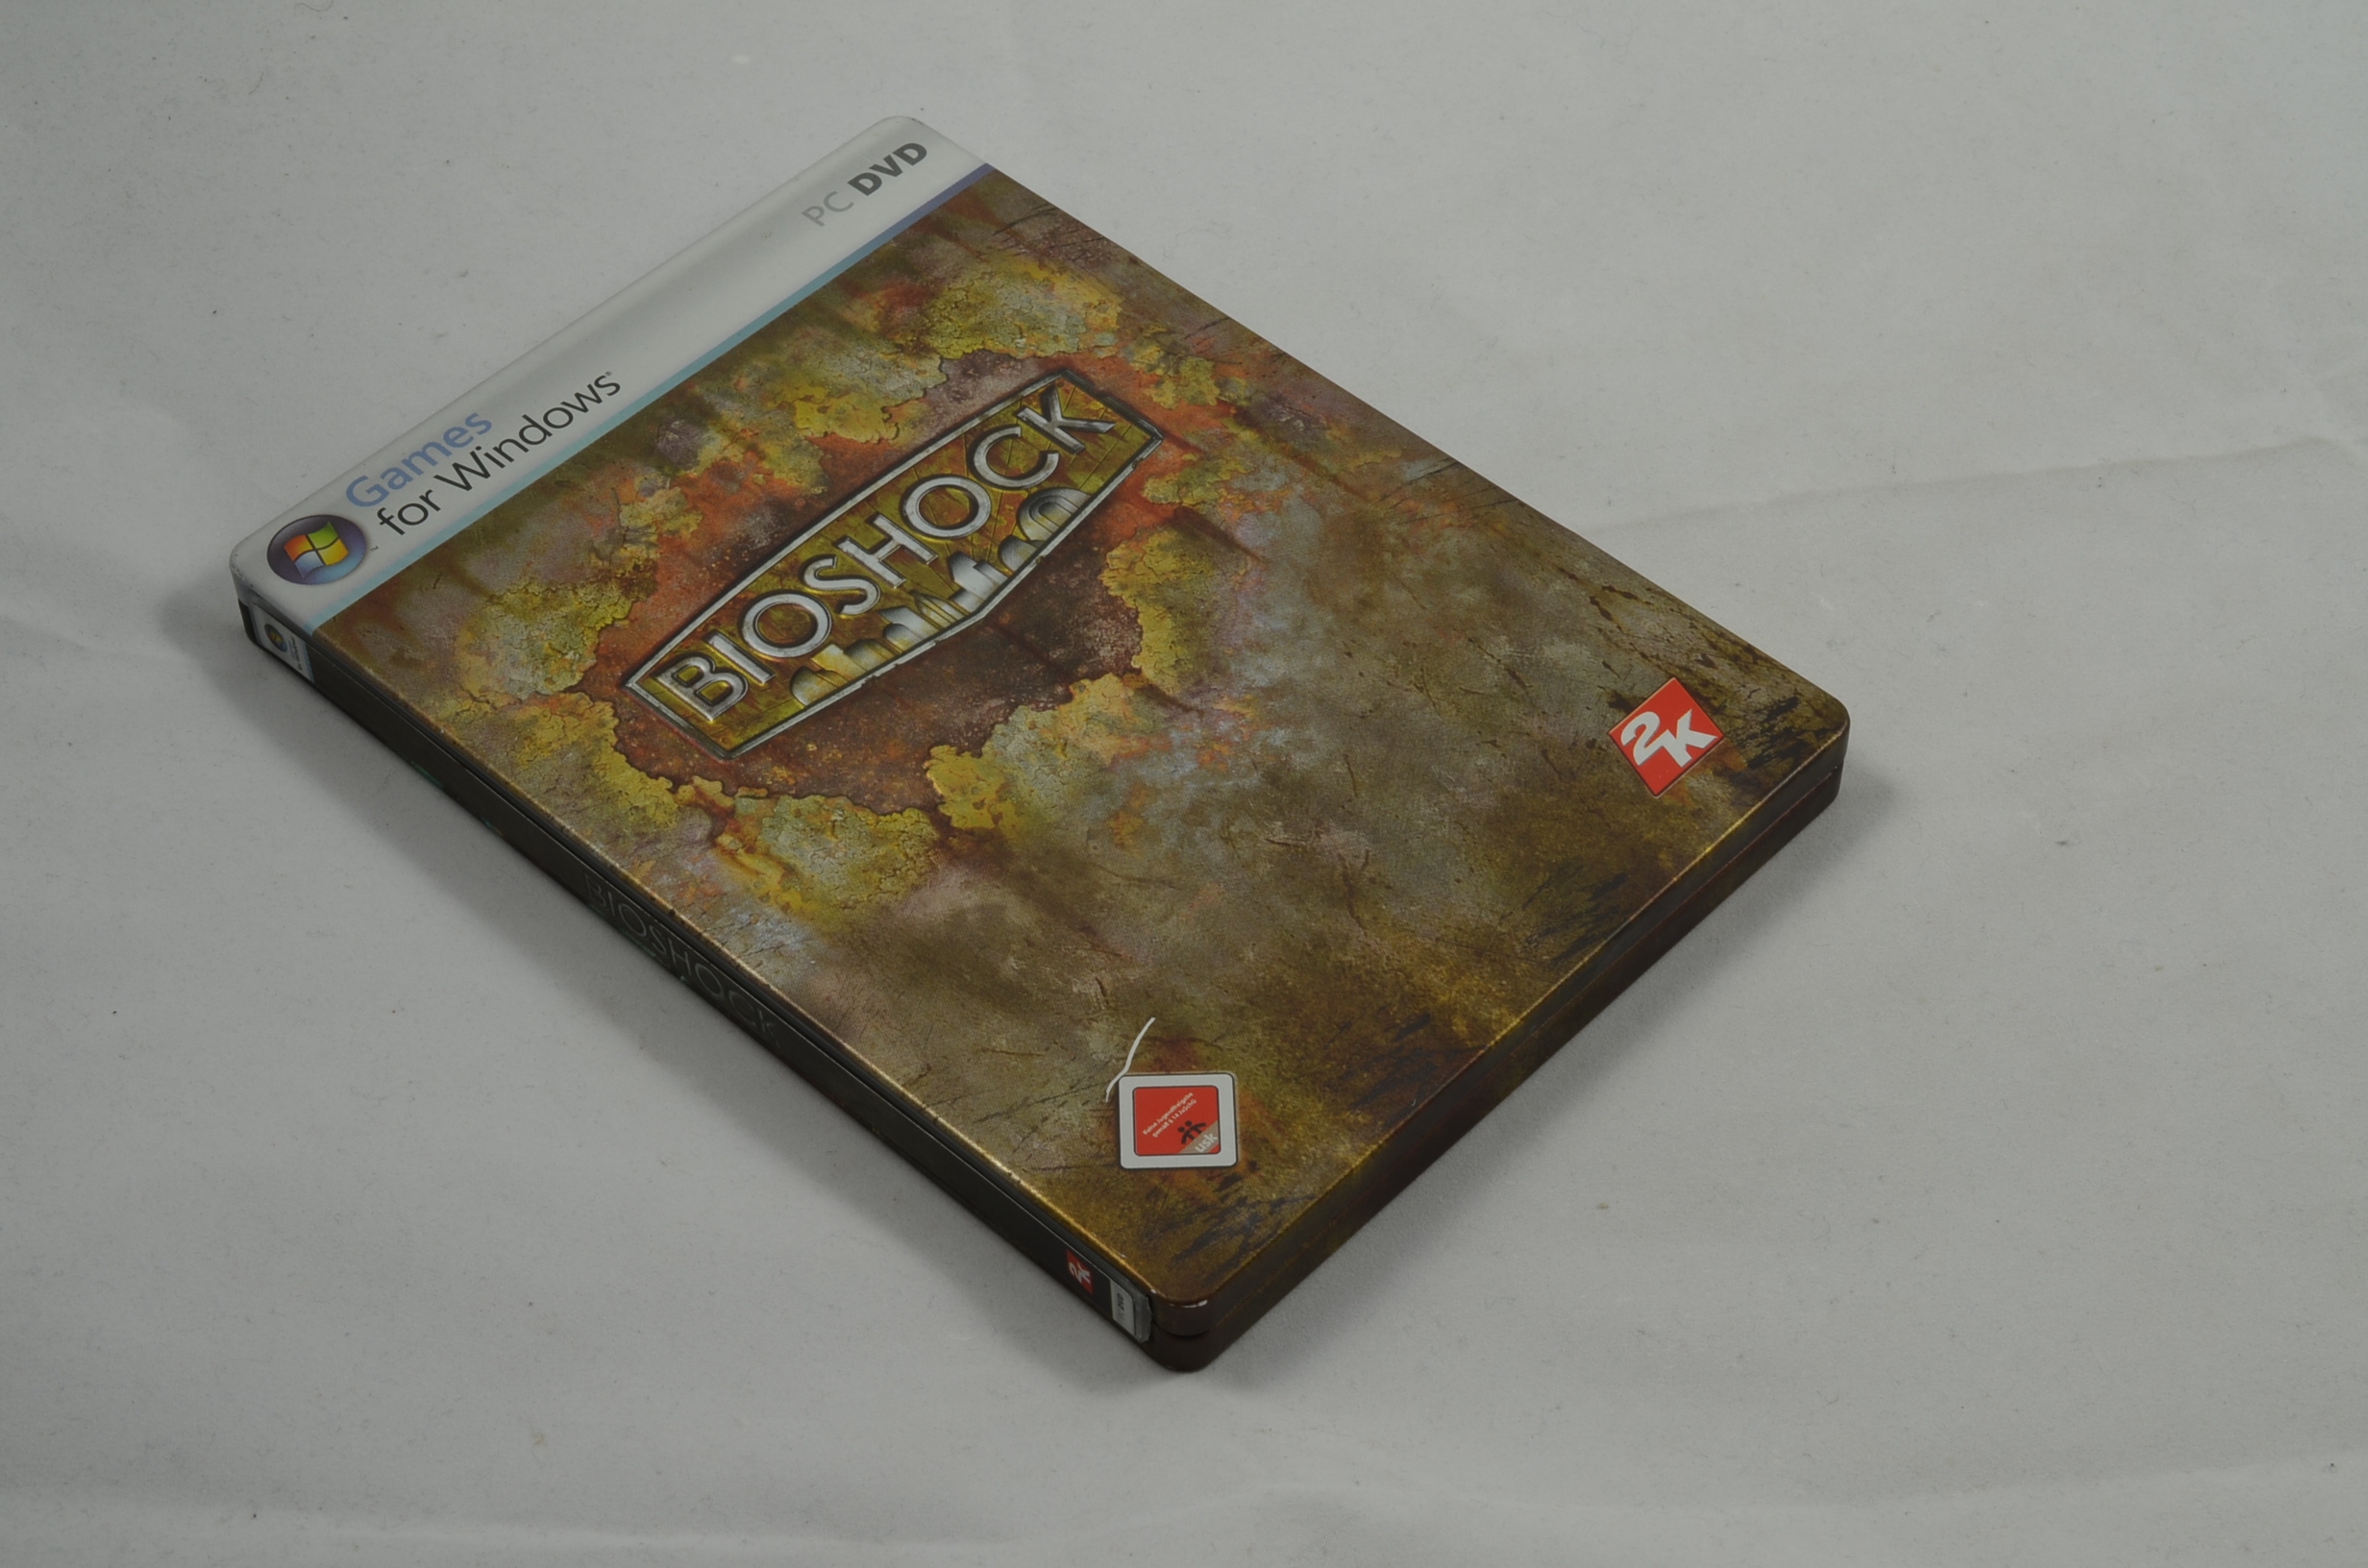 Produktbild von Bioshock PC Spiel (sehr gut)